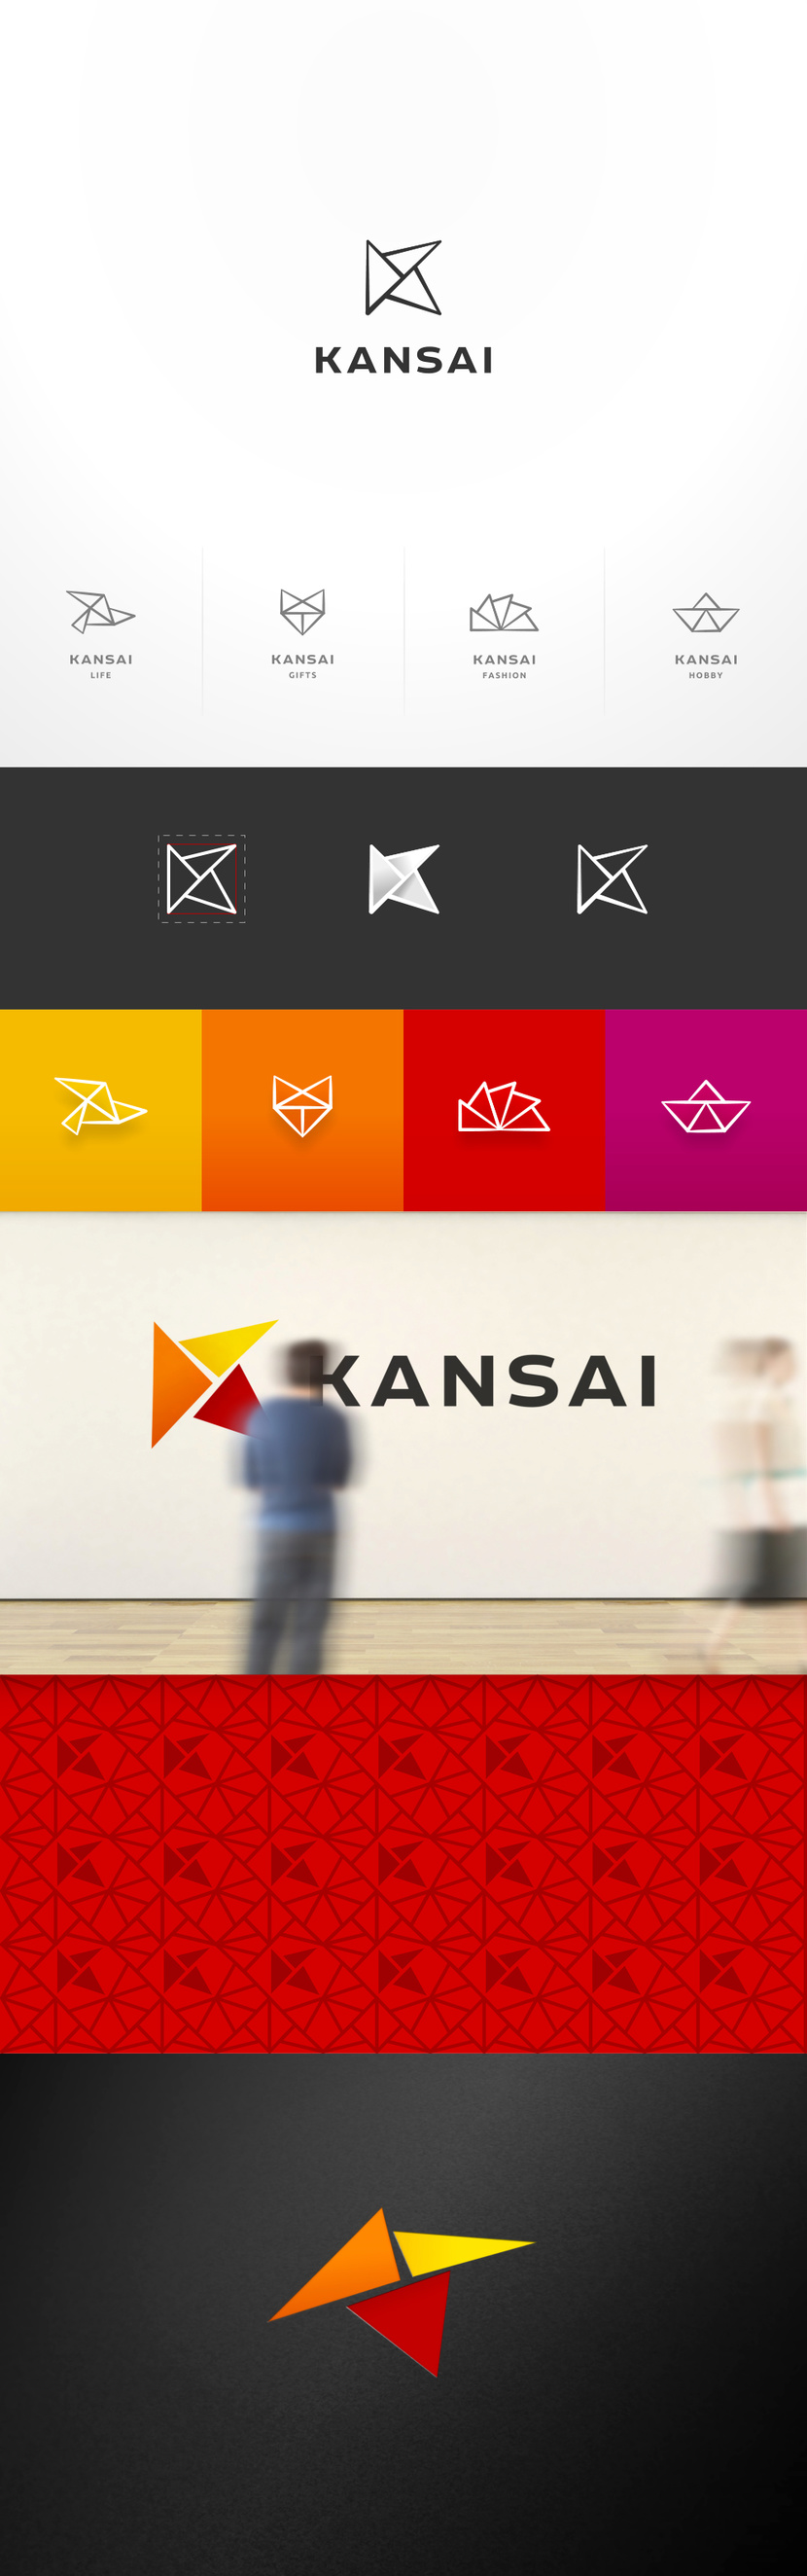 В продолжении проекта №753160 - конкурс на разработку дизайна логотипа и фирменного стиля бренда KANSAI для магазинов крупных форматов